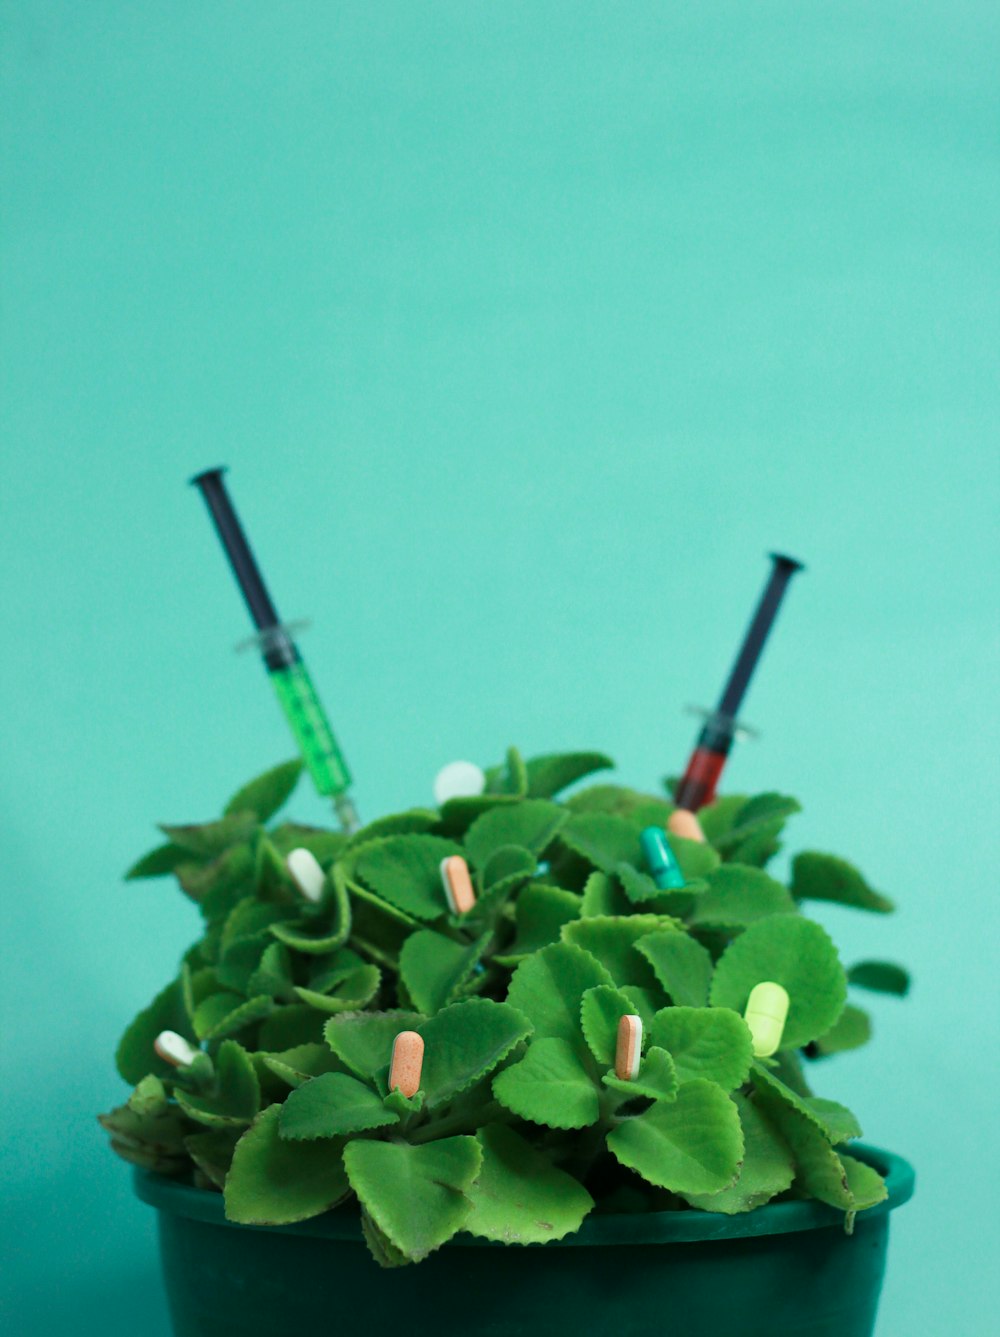 2つのシスが突き出ている緑の植物